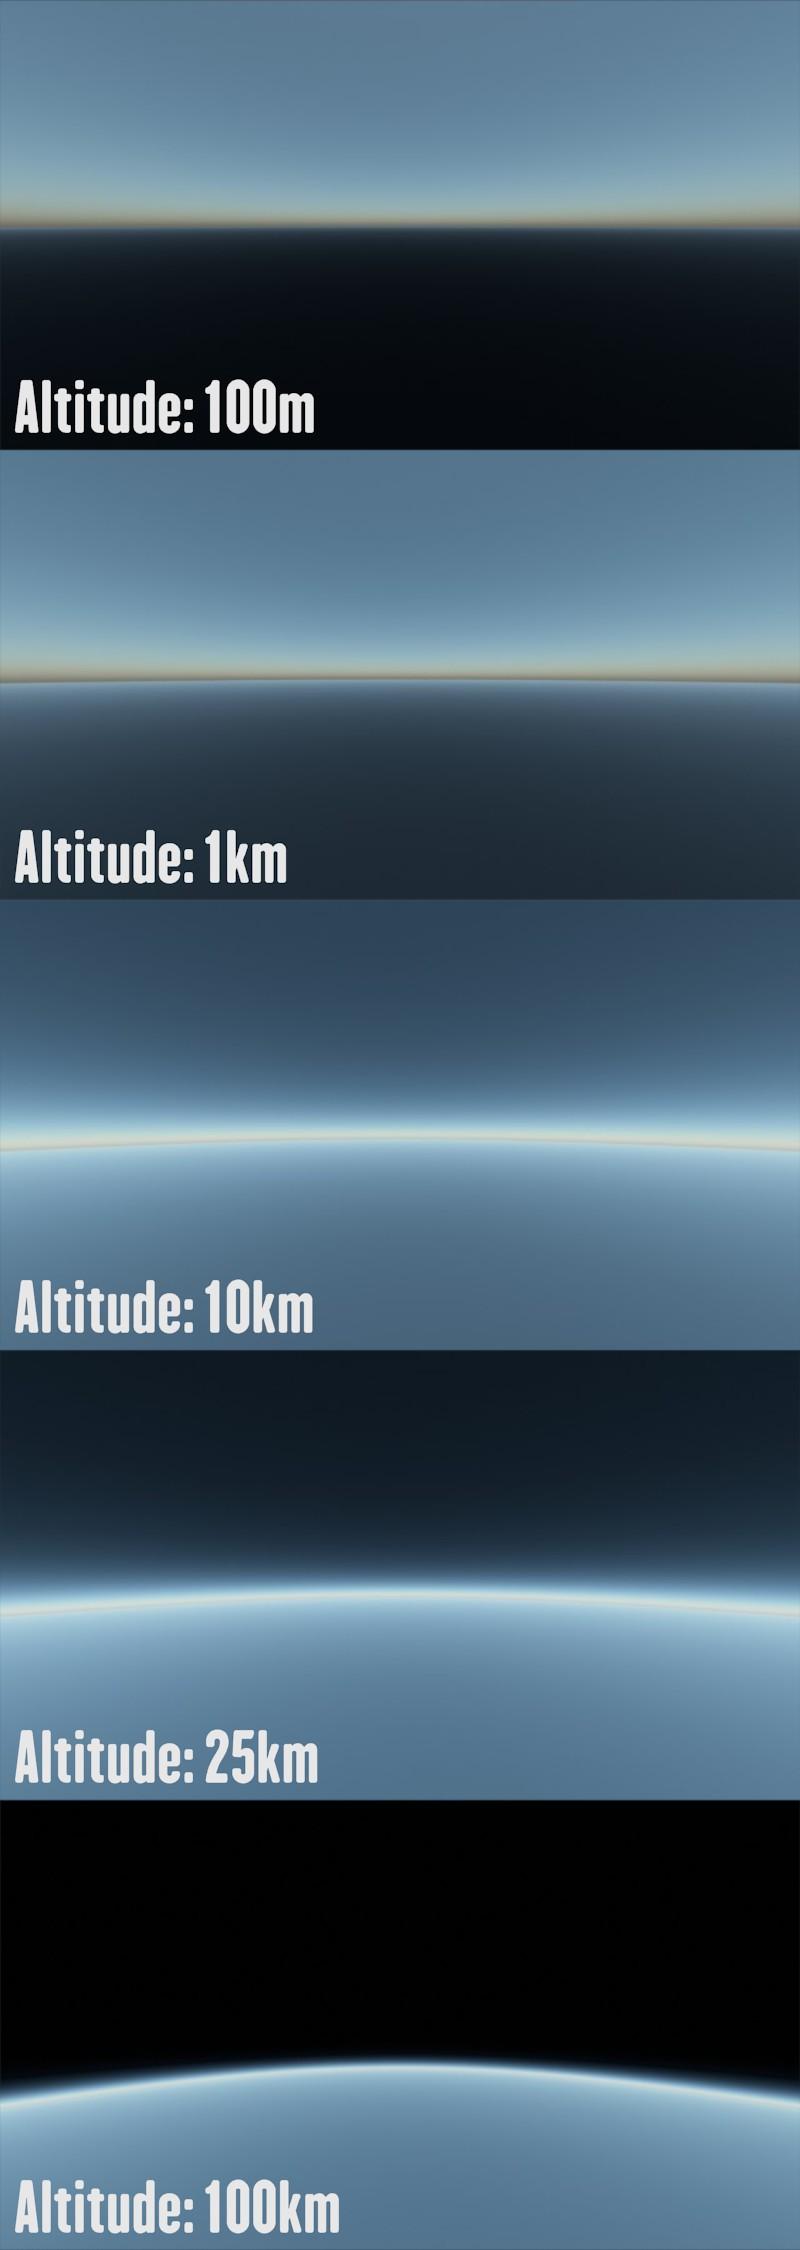 Altitudes ><